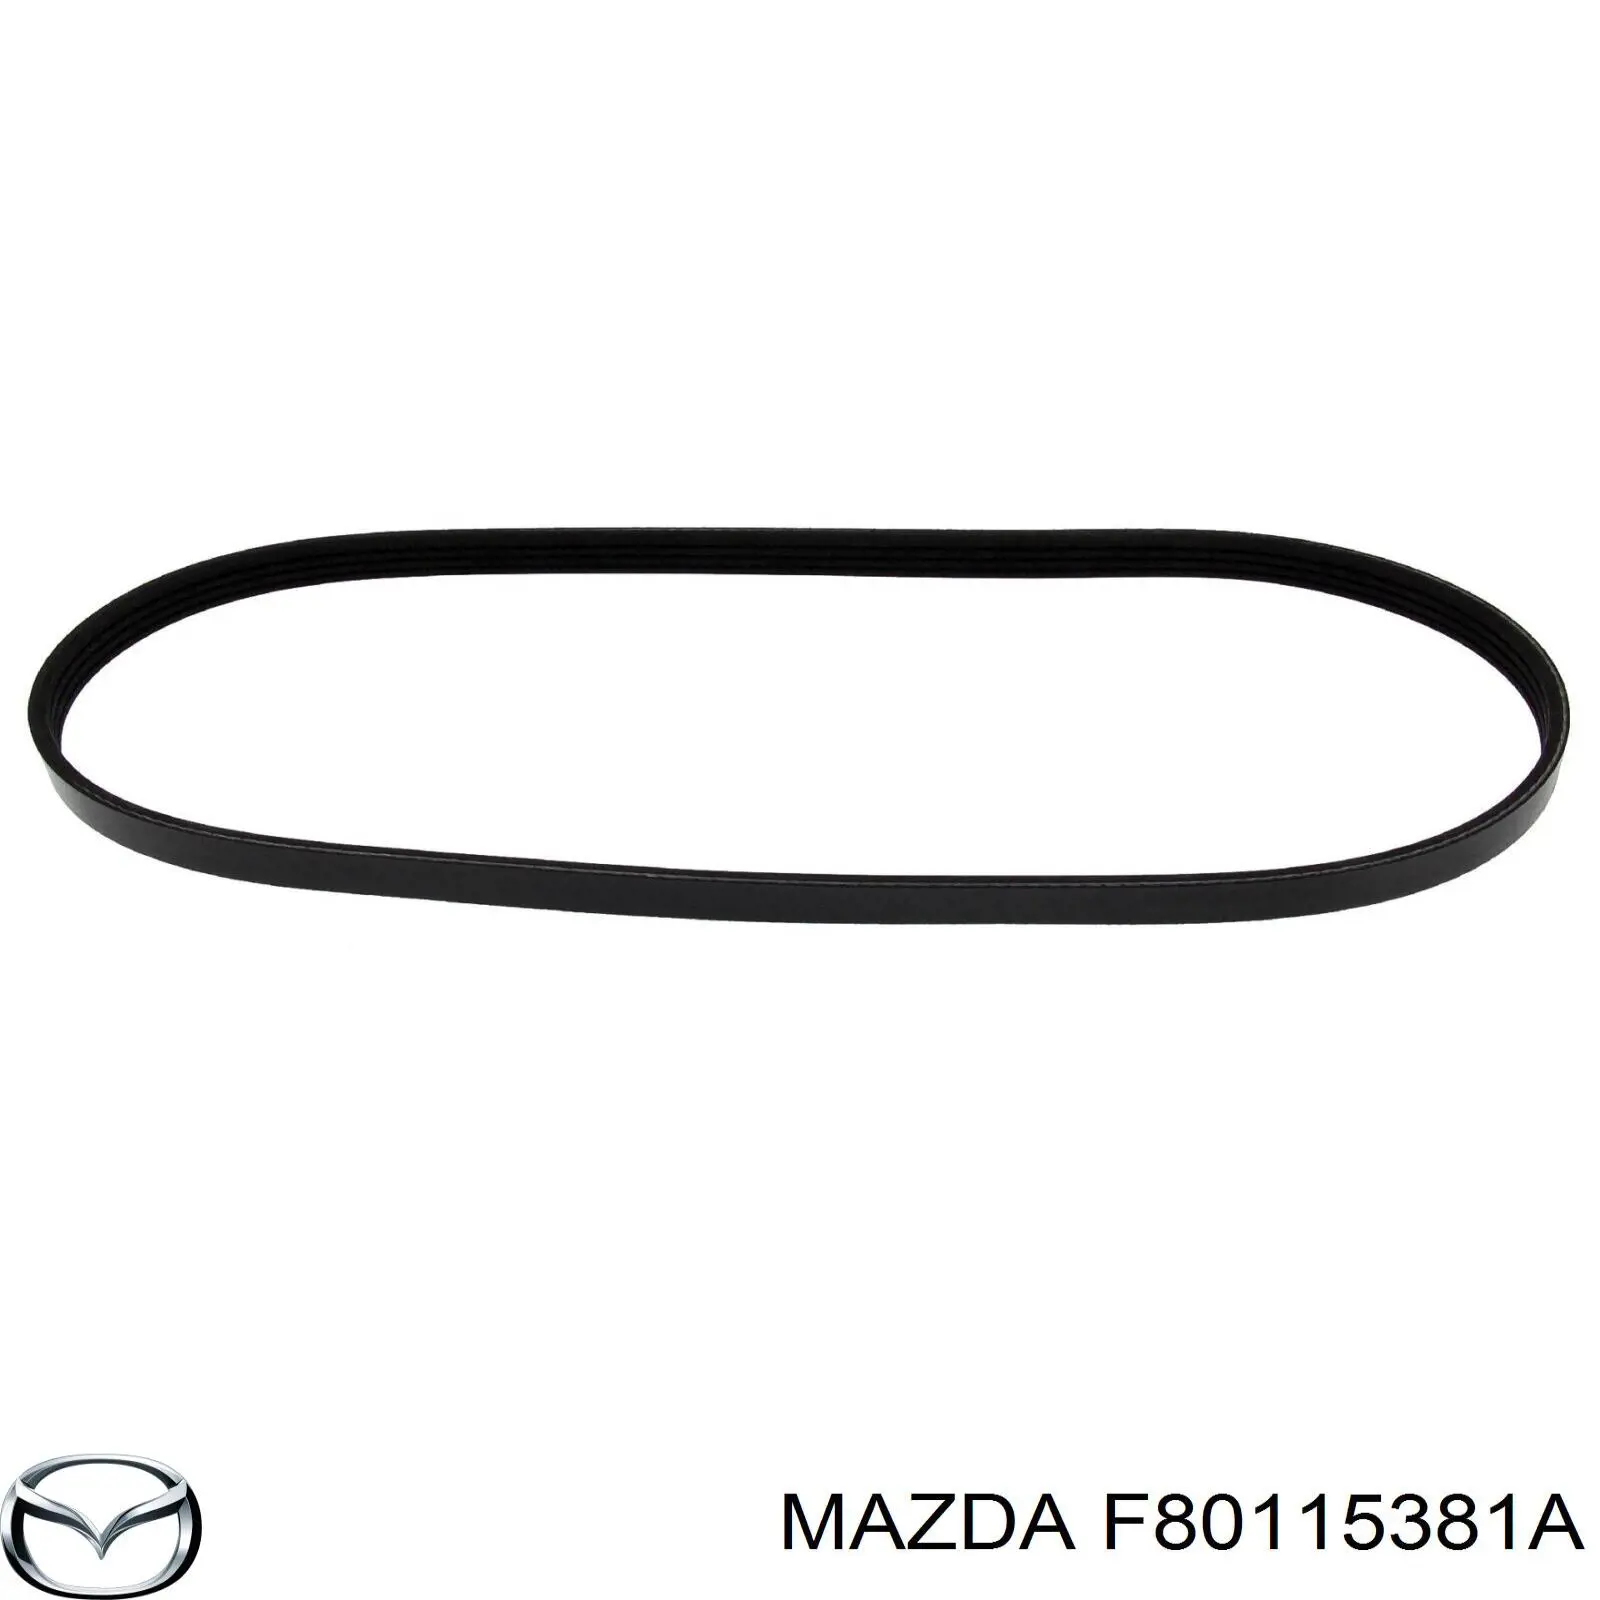 F80115381A Mazda correa trapezoidal